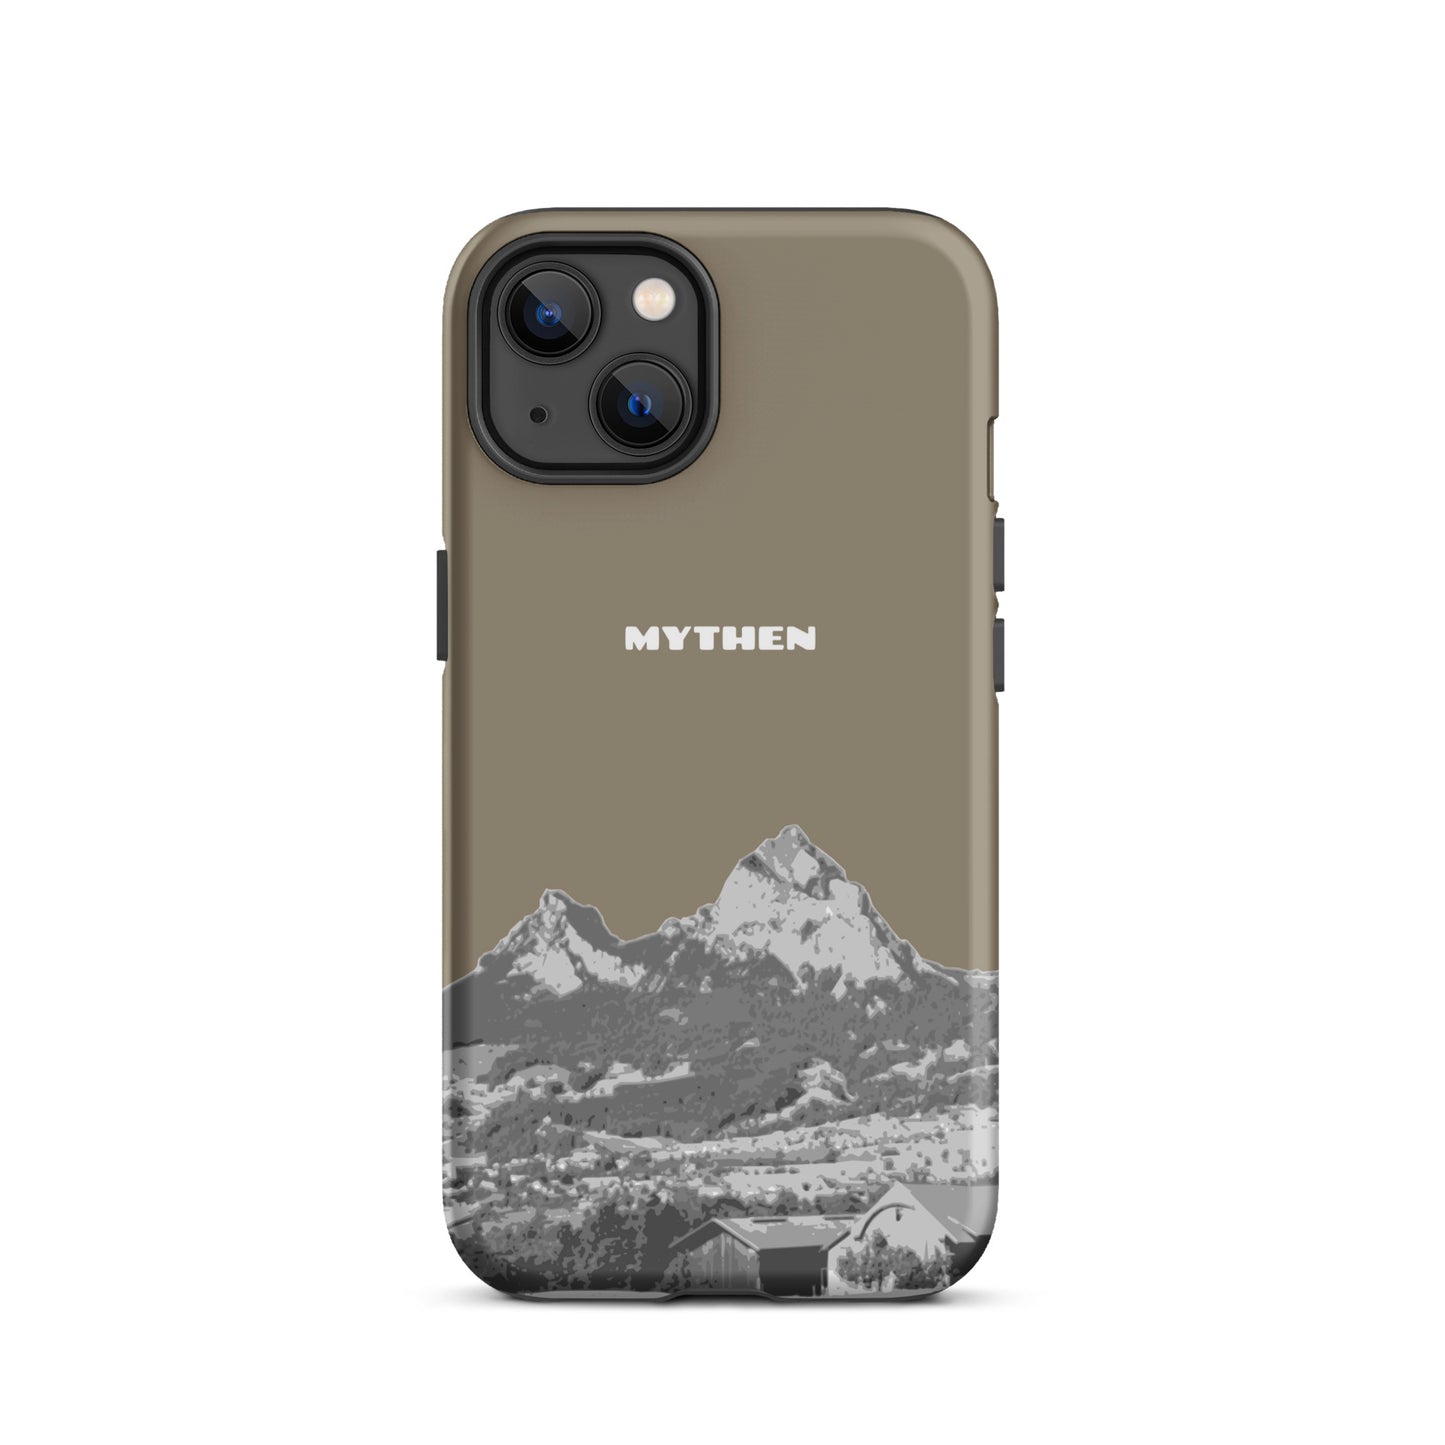 Hülle für das iPhone 13 von Apple in der Farbe Graubraun, dass den Grossen Mythen und den Kleinen Mythen bei Schwyz zeigt. 